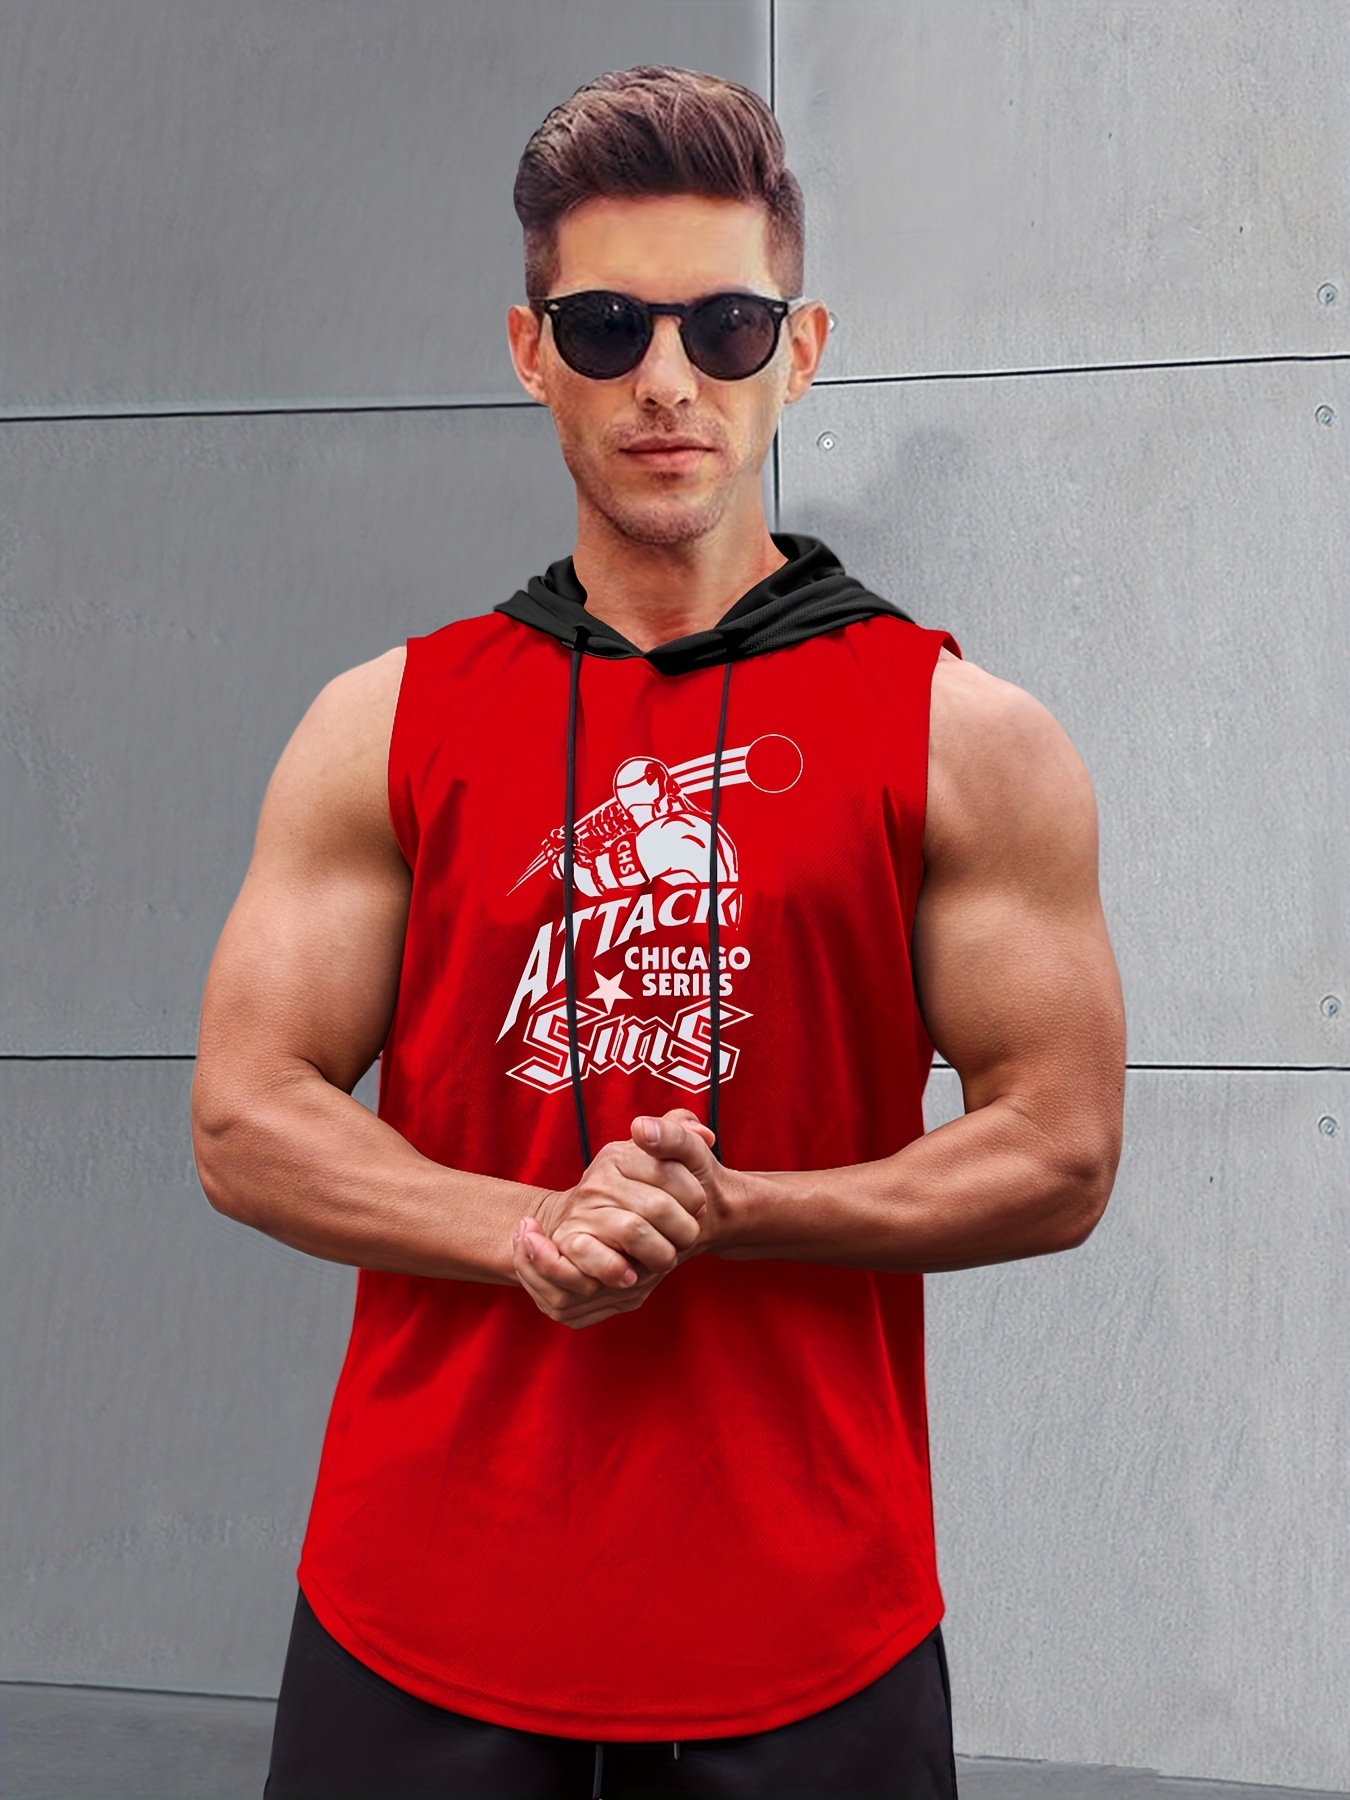 Camiseta Gym Rat Fitness Bodybuilding 1